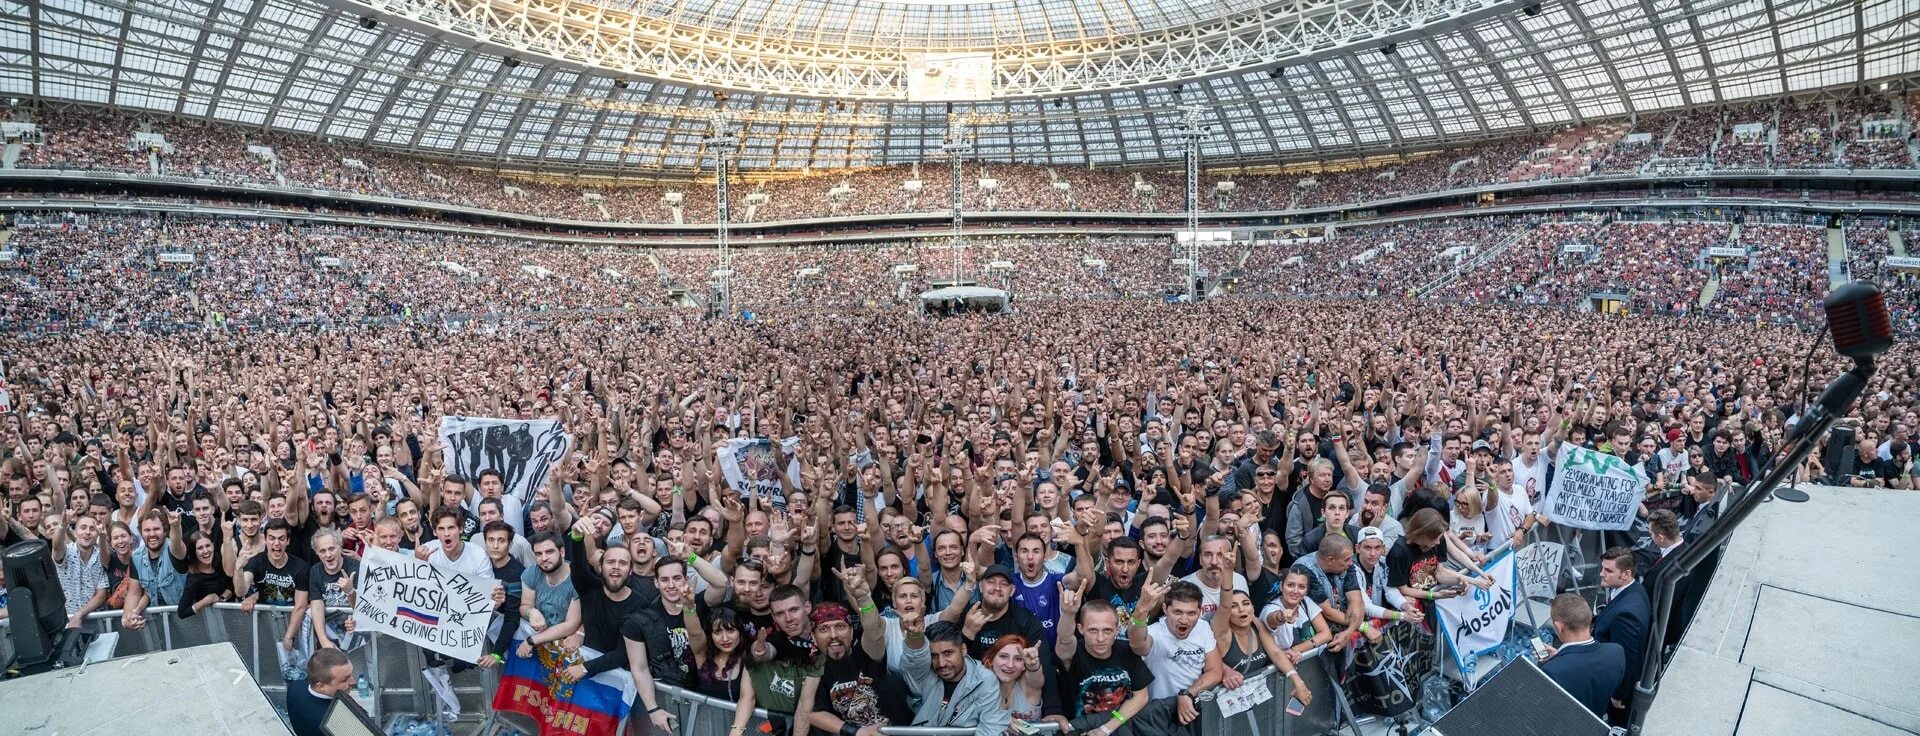 Металлика в Лужниках. Концерт металлика в Москве в Лужниках 2019. Metallica Лужники. Металлика в Лужниках 2007.